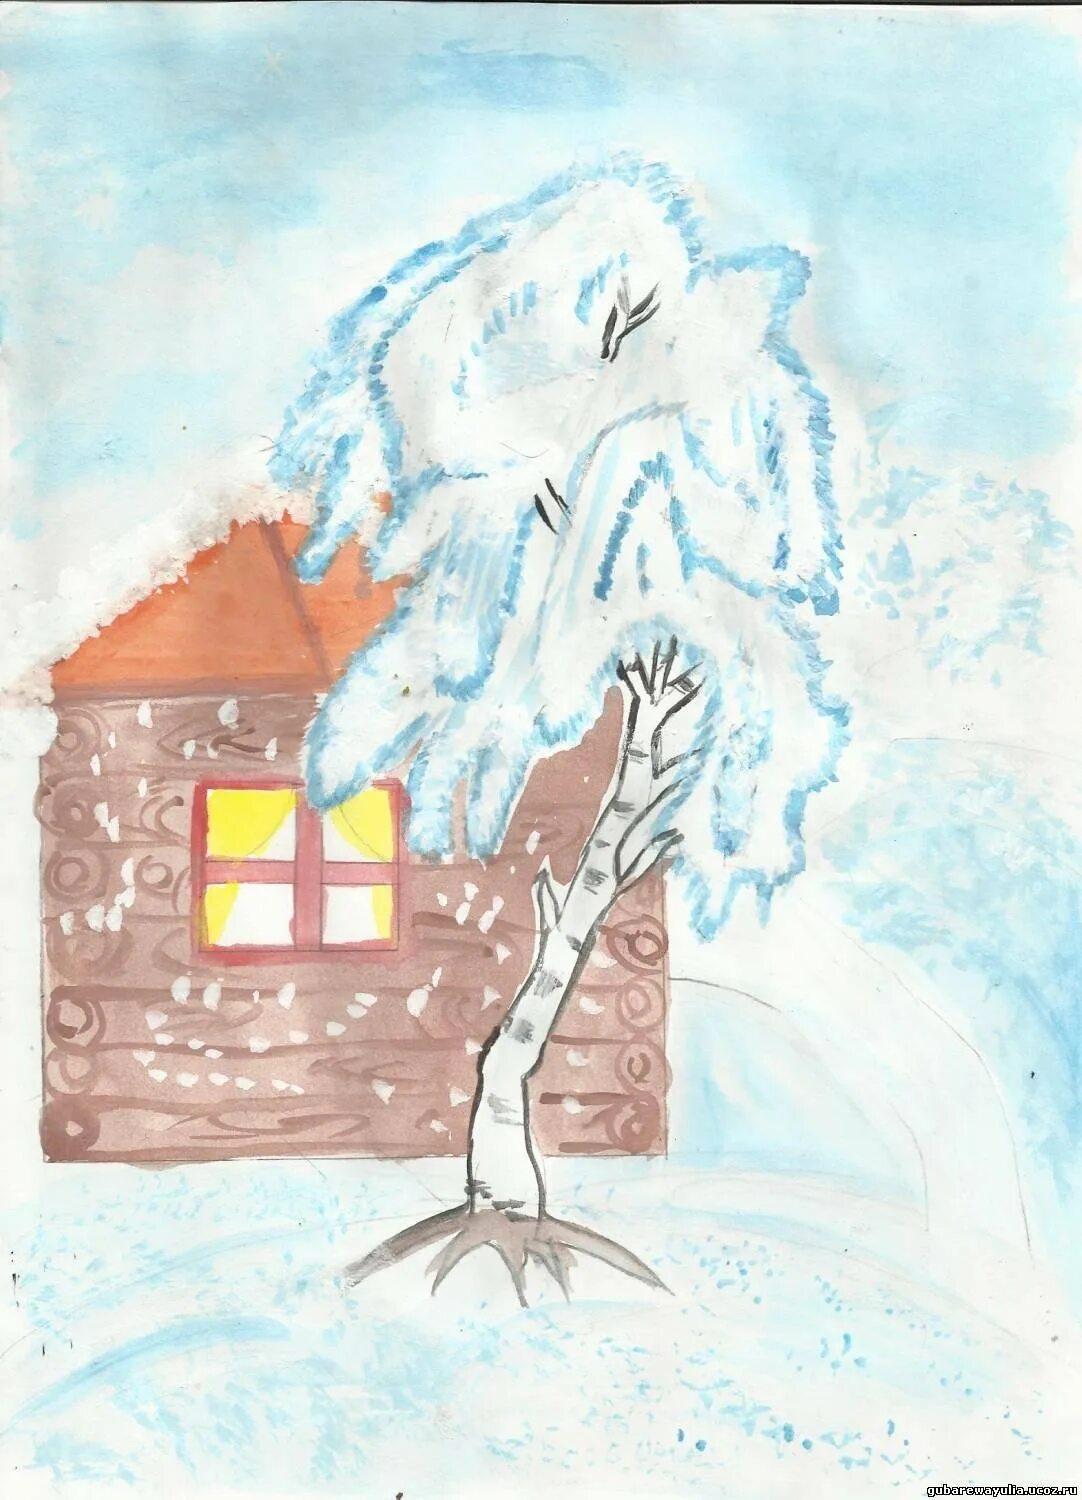 Иллюстрация к стихотворению Есенина белая береза. Рисунок к стихотворению Есенина береза. Рисунок к стиху Есенина белая береза. Иллюстрация к стиху береза Есенин. Рисунки к стихам есенина